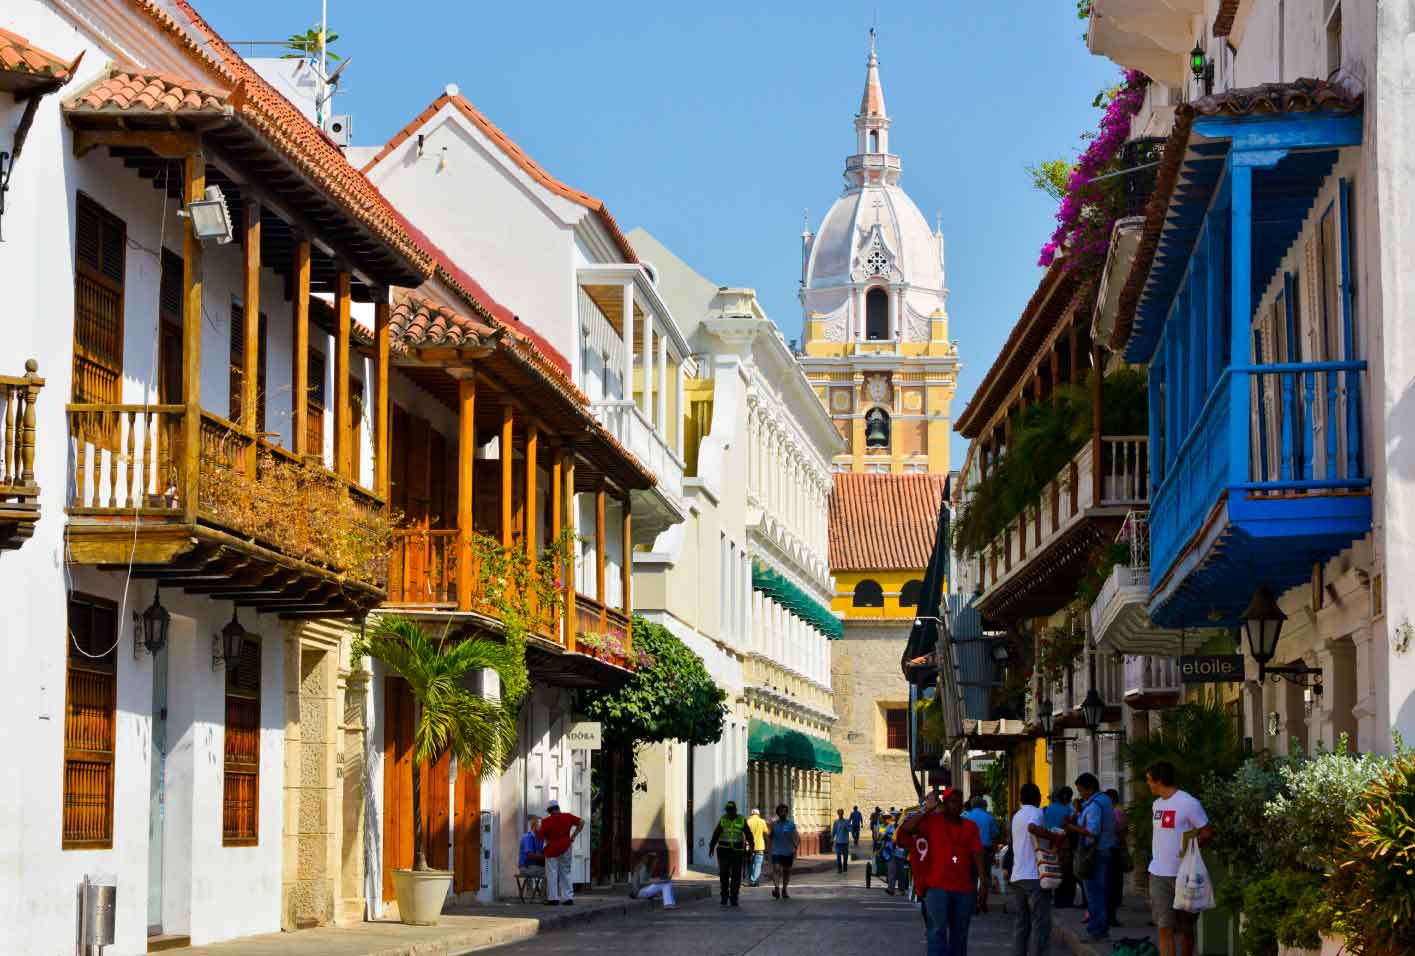 Cartagena, fourth best destination